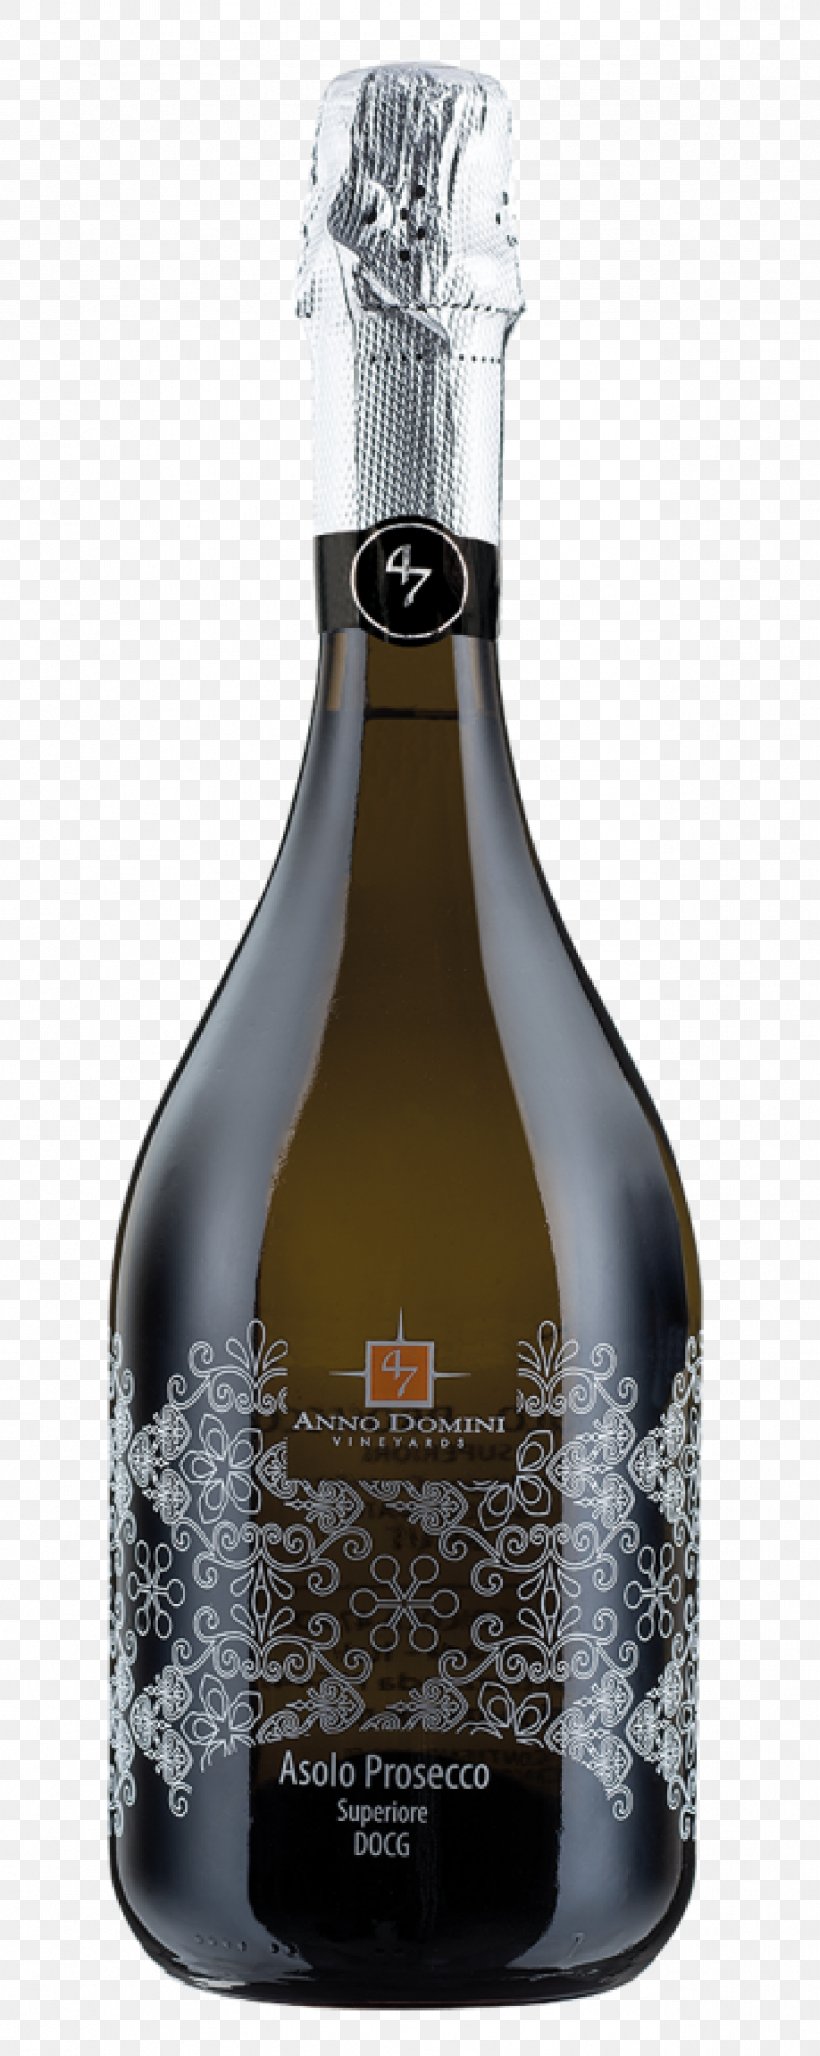 Champagne Prosecco Sparkling Wine Glera, PNG, 1277x3202px, Champagne, Alcoholic Beverage, Asolo Prosecco, Asti Docg, Barware Download Free